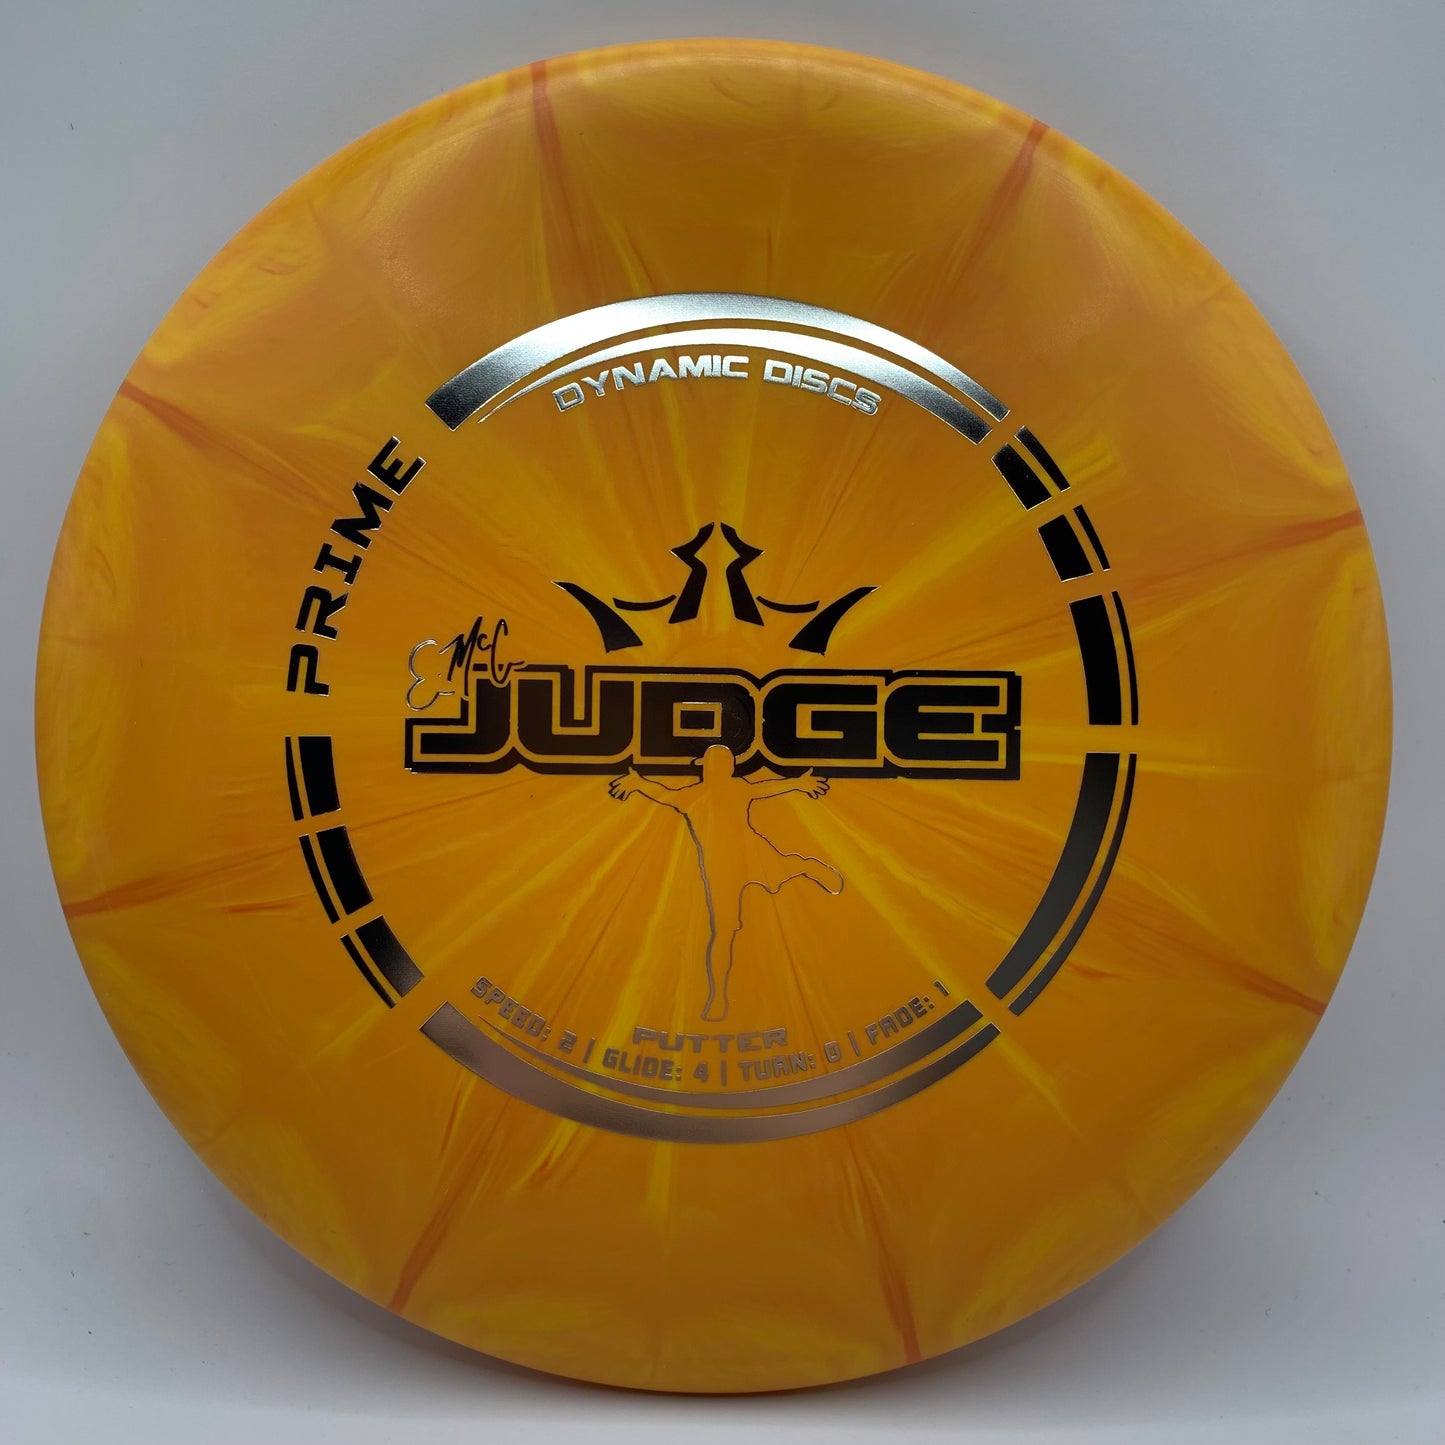 EMAC Judge - Prime Burst